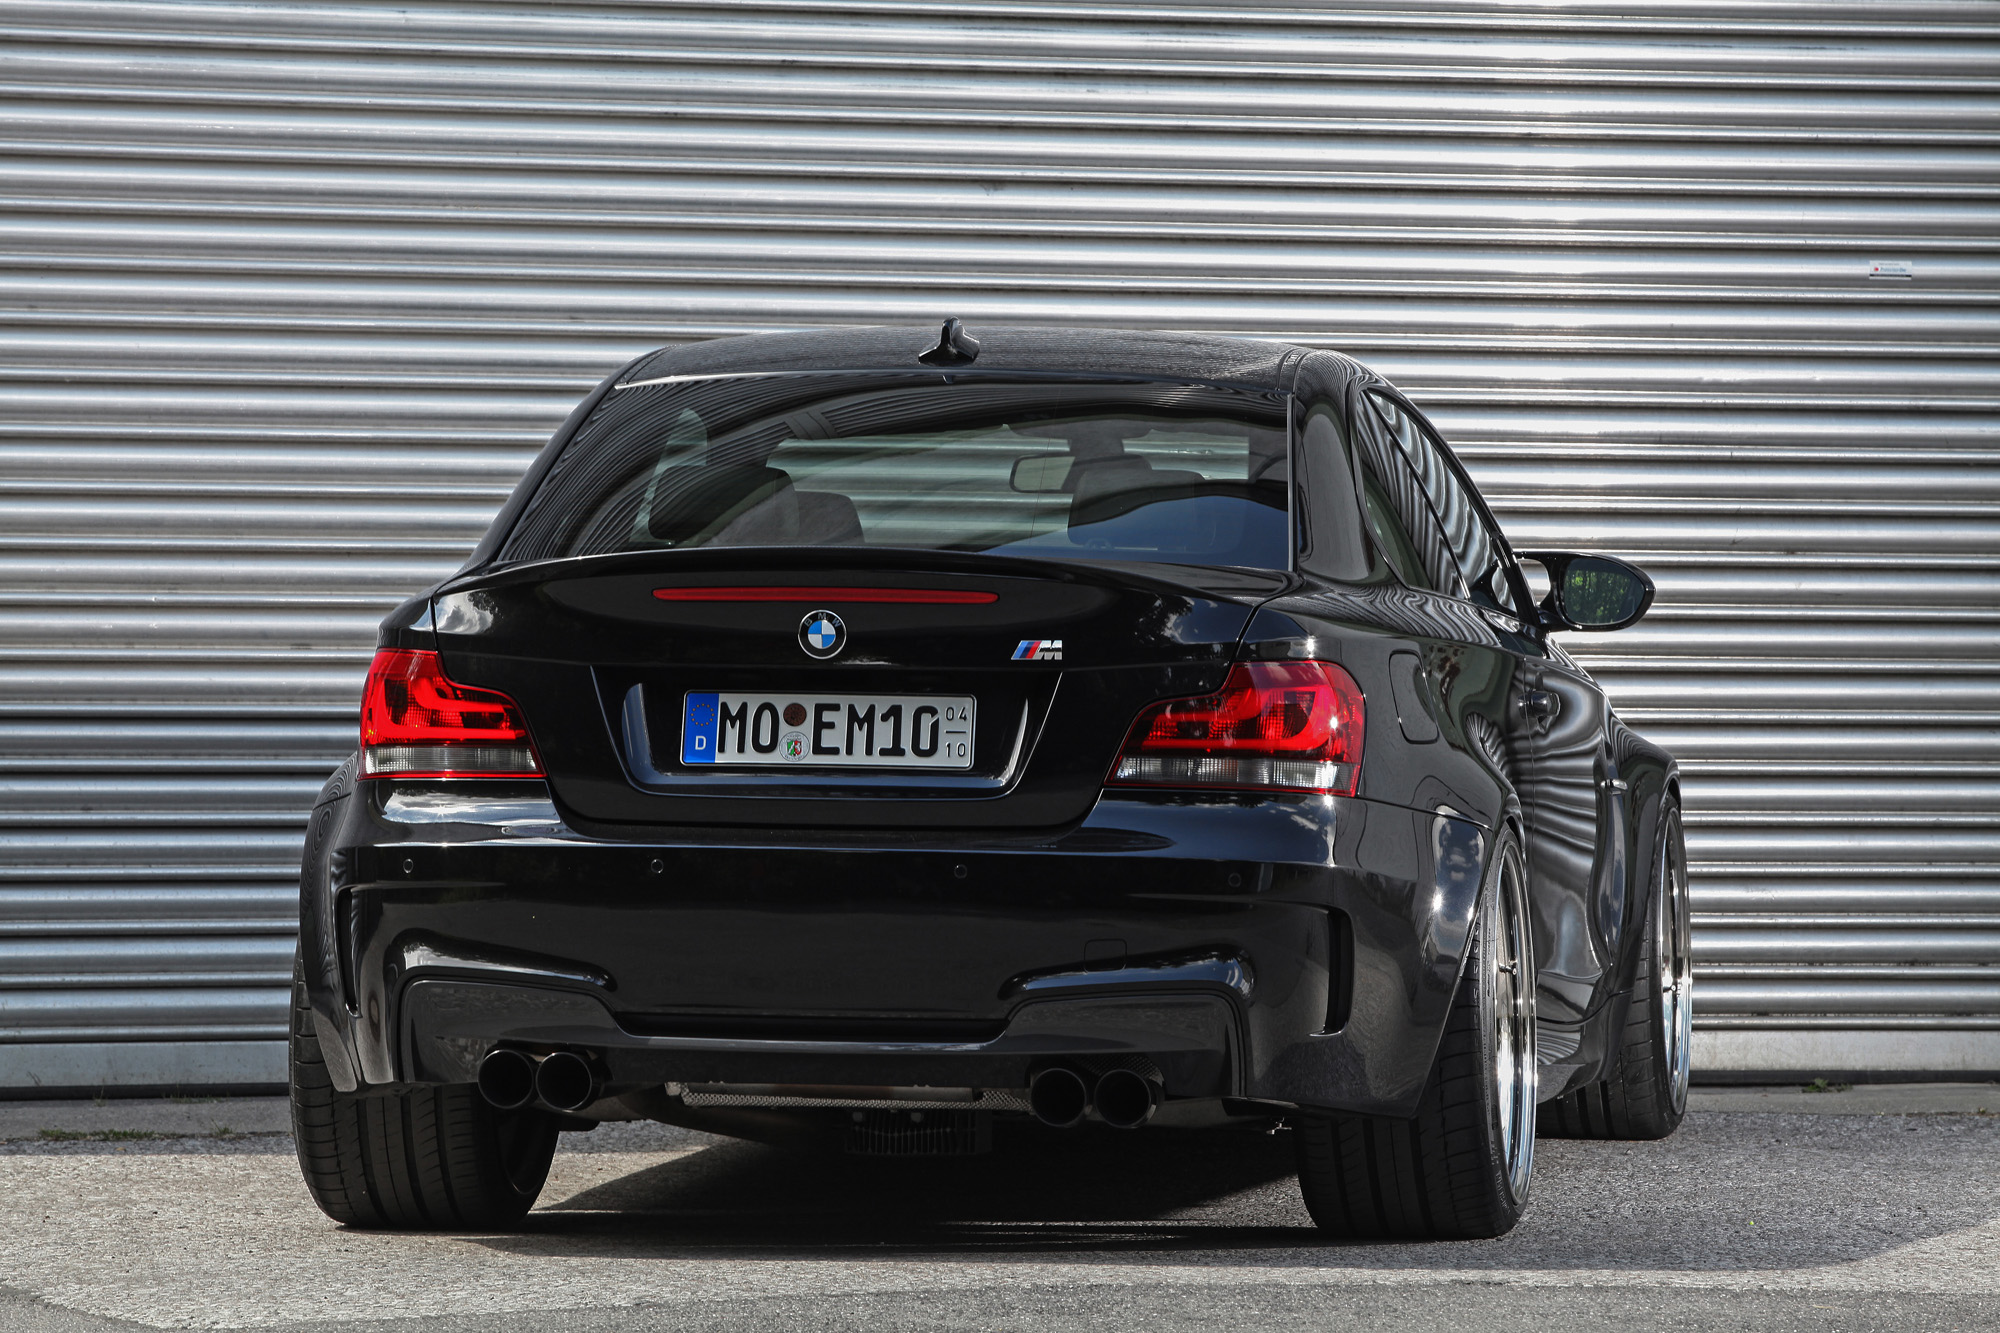 Auch ein schöner Rücken kann entzücken: Durch die 295er Pneus wirkt der BMW 1er M noch bulliger.